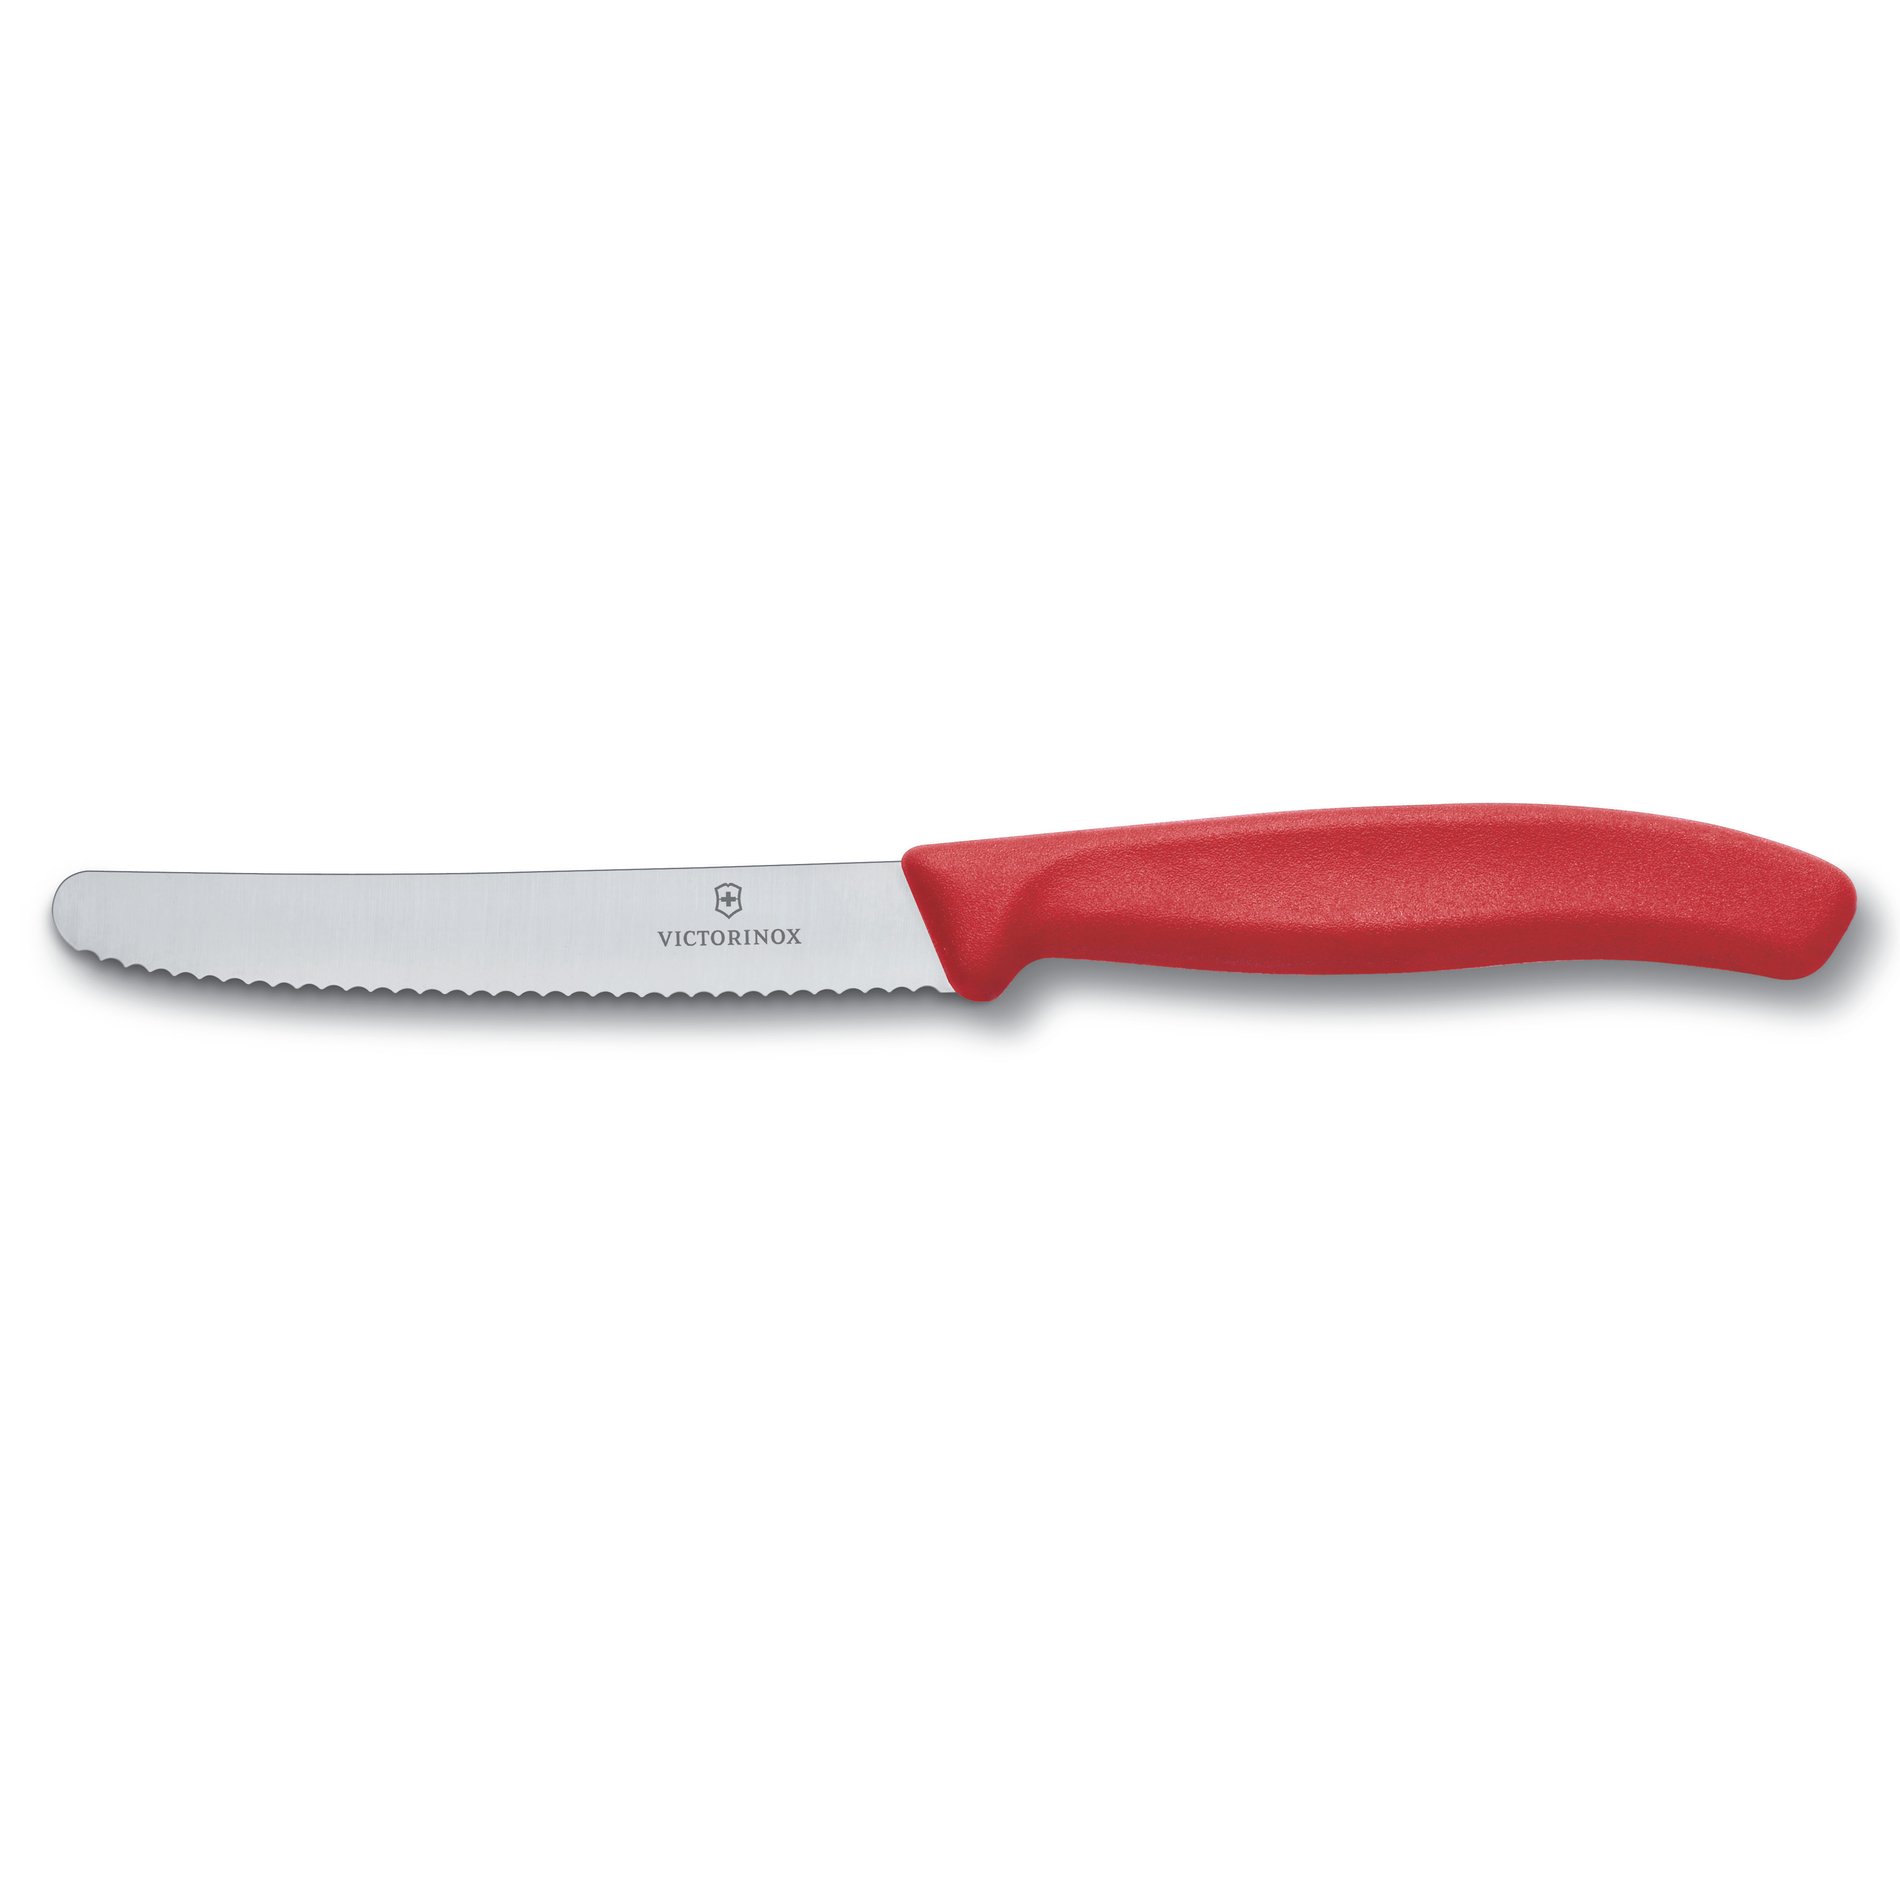 VICTORINOX steakový nůž z nerezové oceli STEAK RED 11 cm